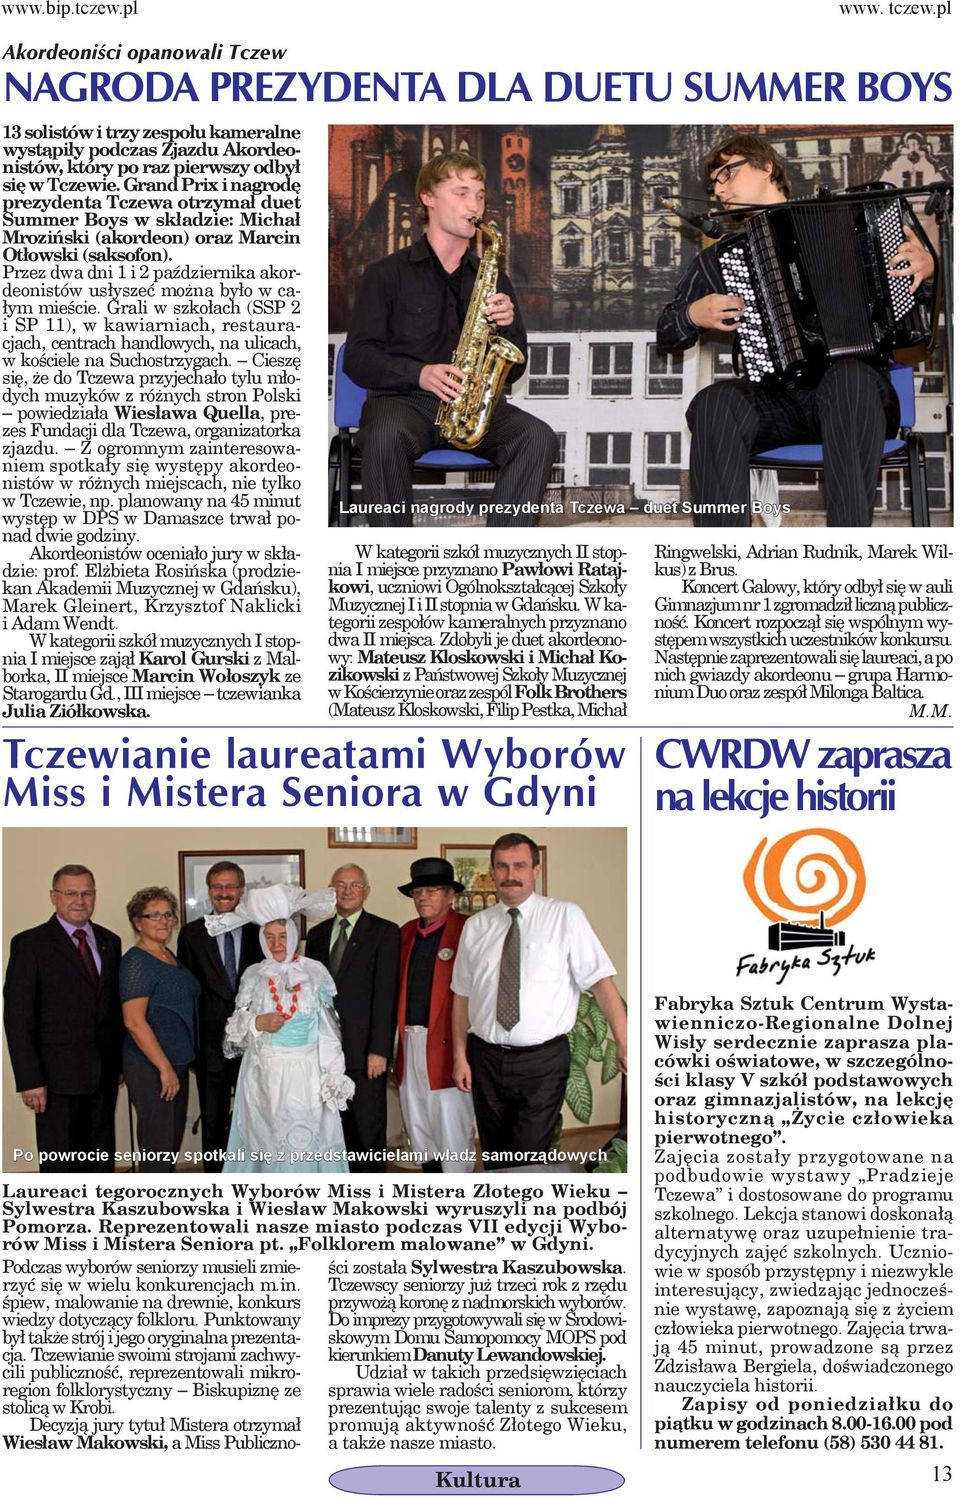 Grand Prix i nagrodę prezydenta Tczewa otrzymał duet Summer Boys w składzie: Michał Mroziński (akordeon) oraz Marcin Otłowski (saksofon).